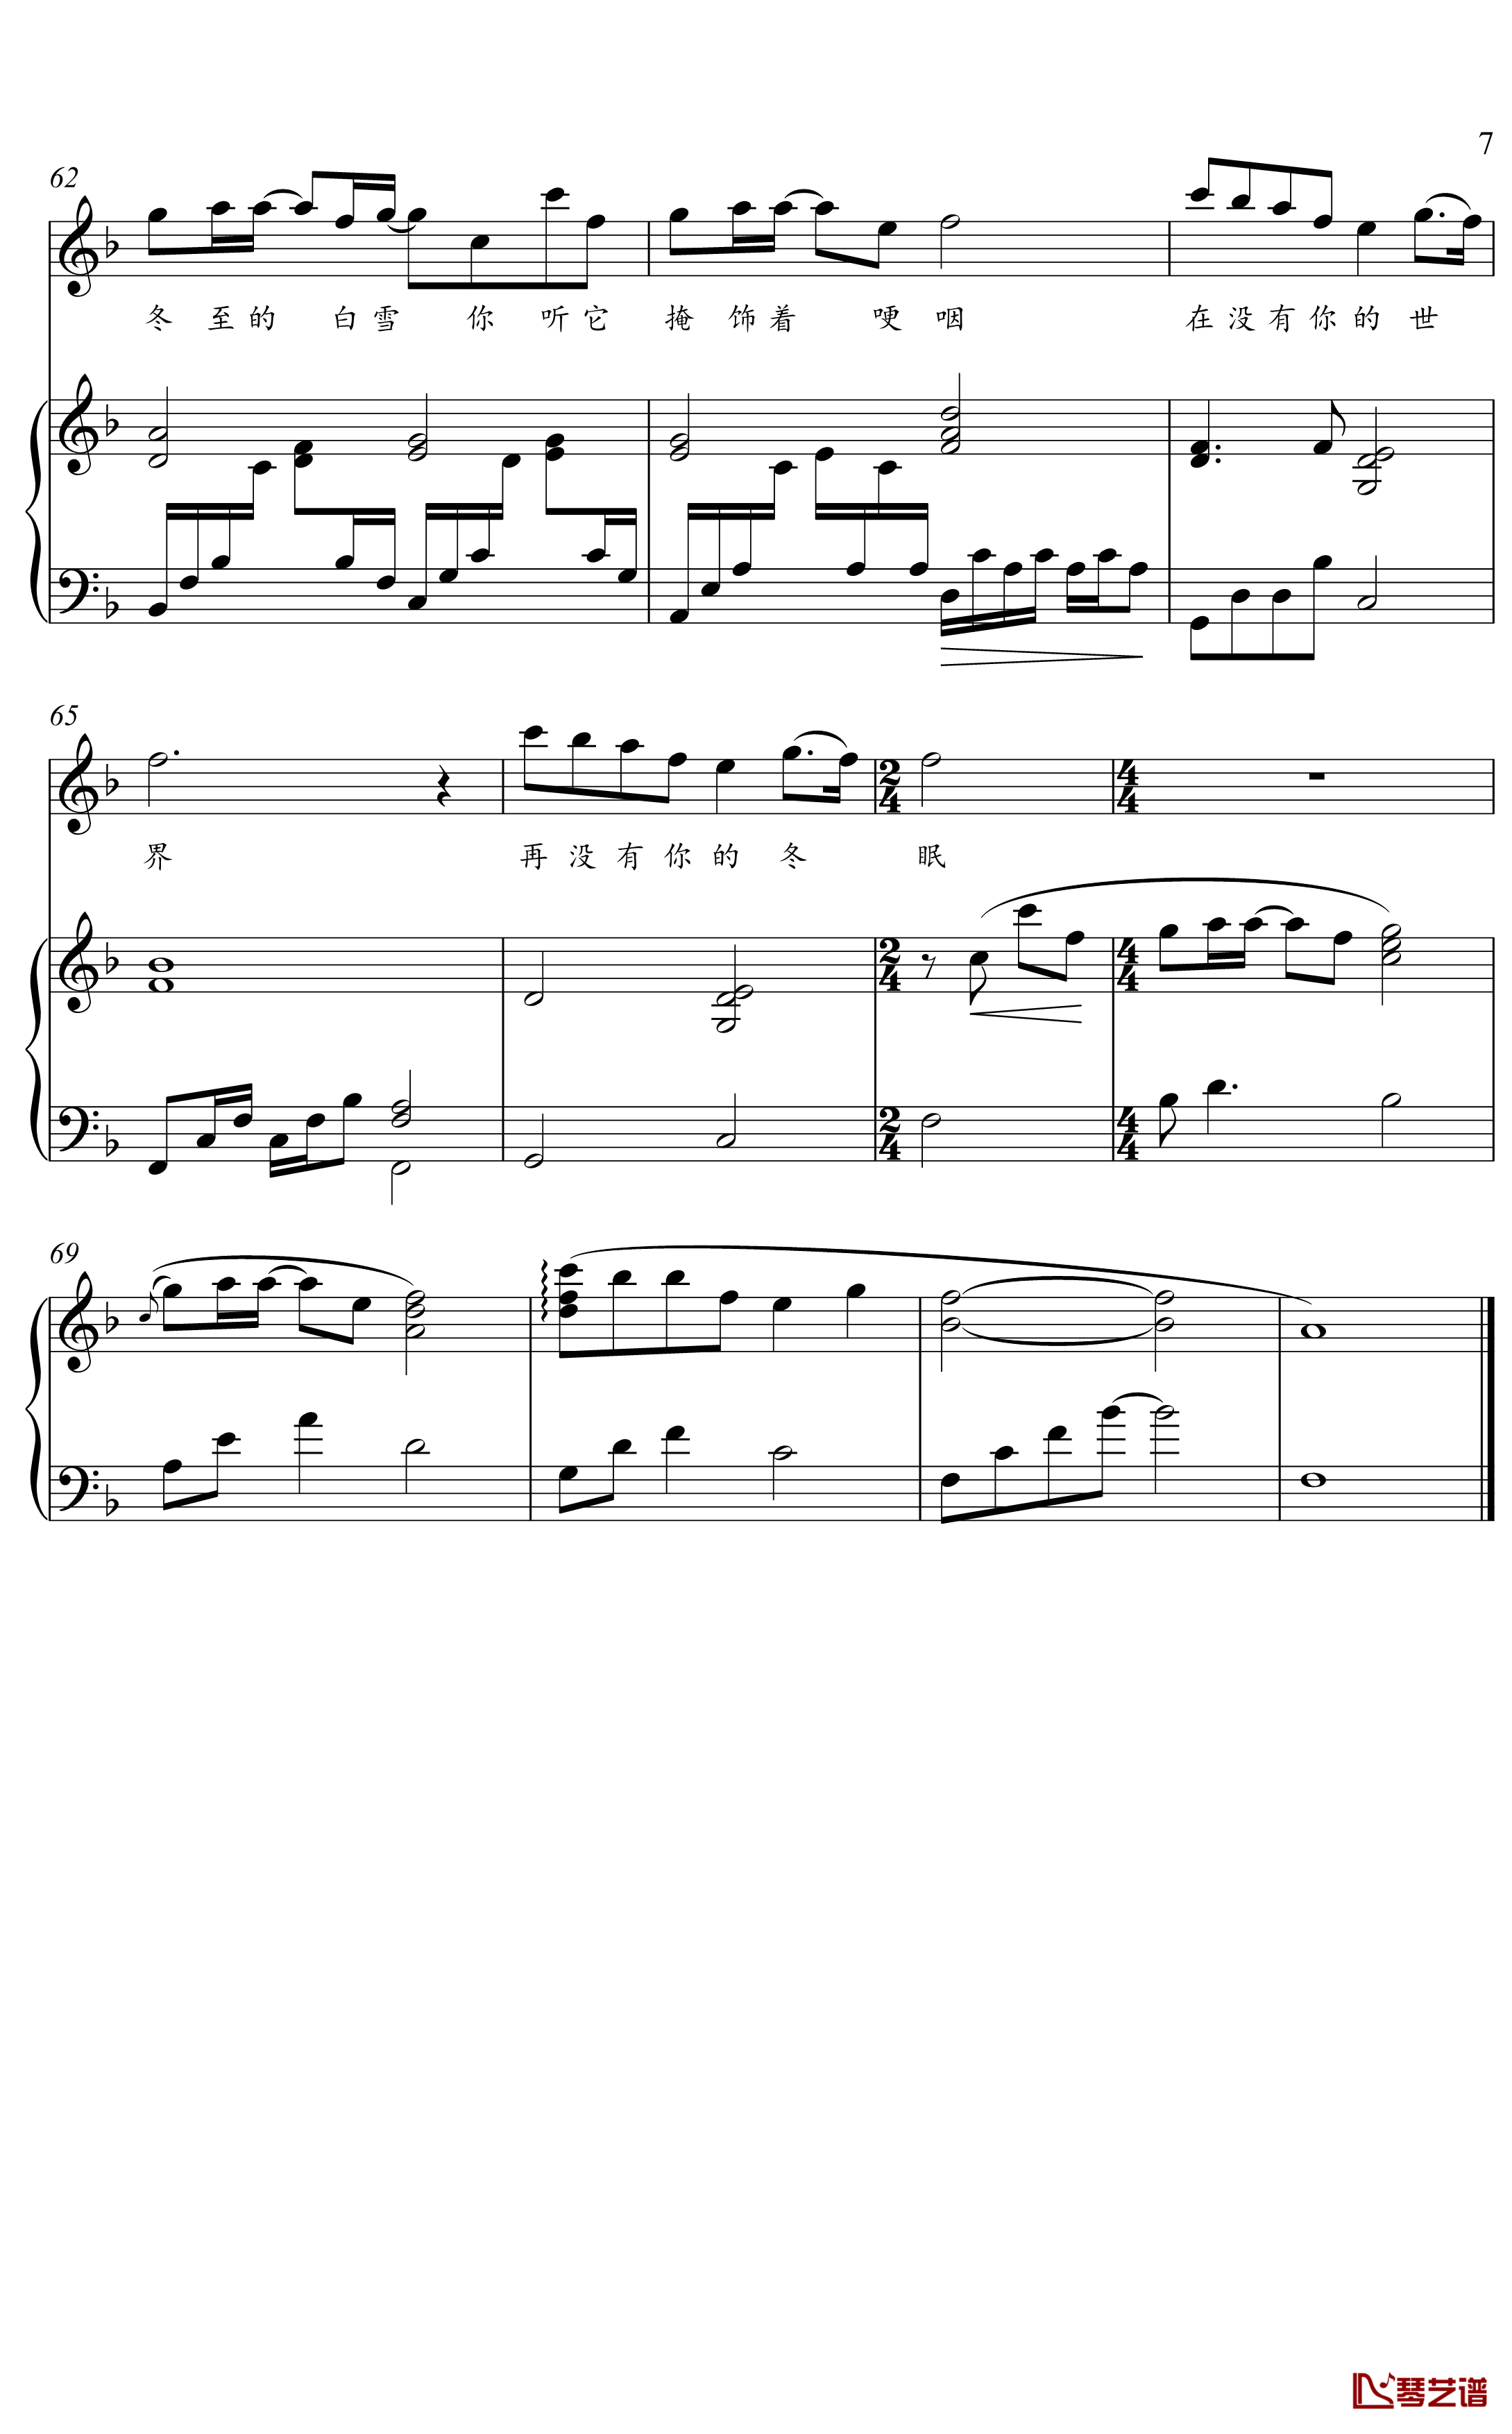 冬眠钢琴谱-金老师弹唱谱2003197